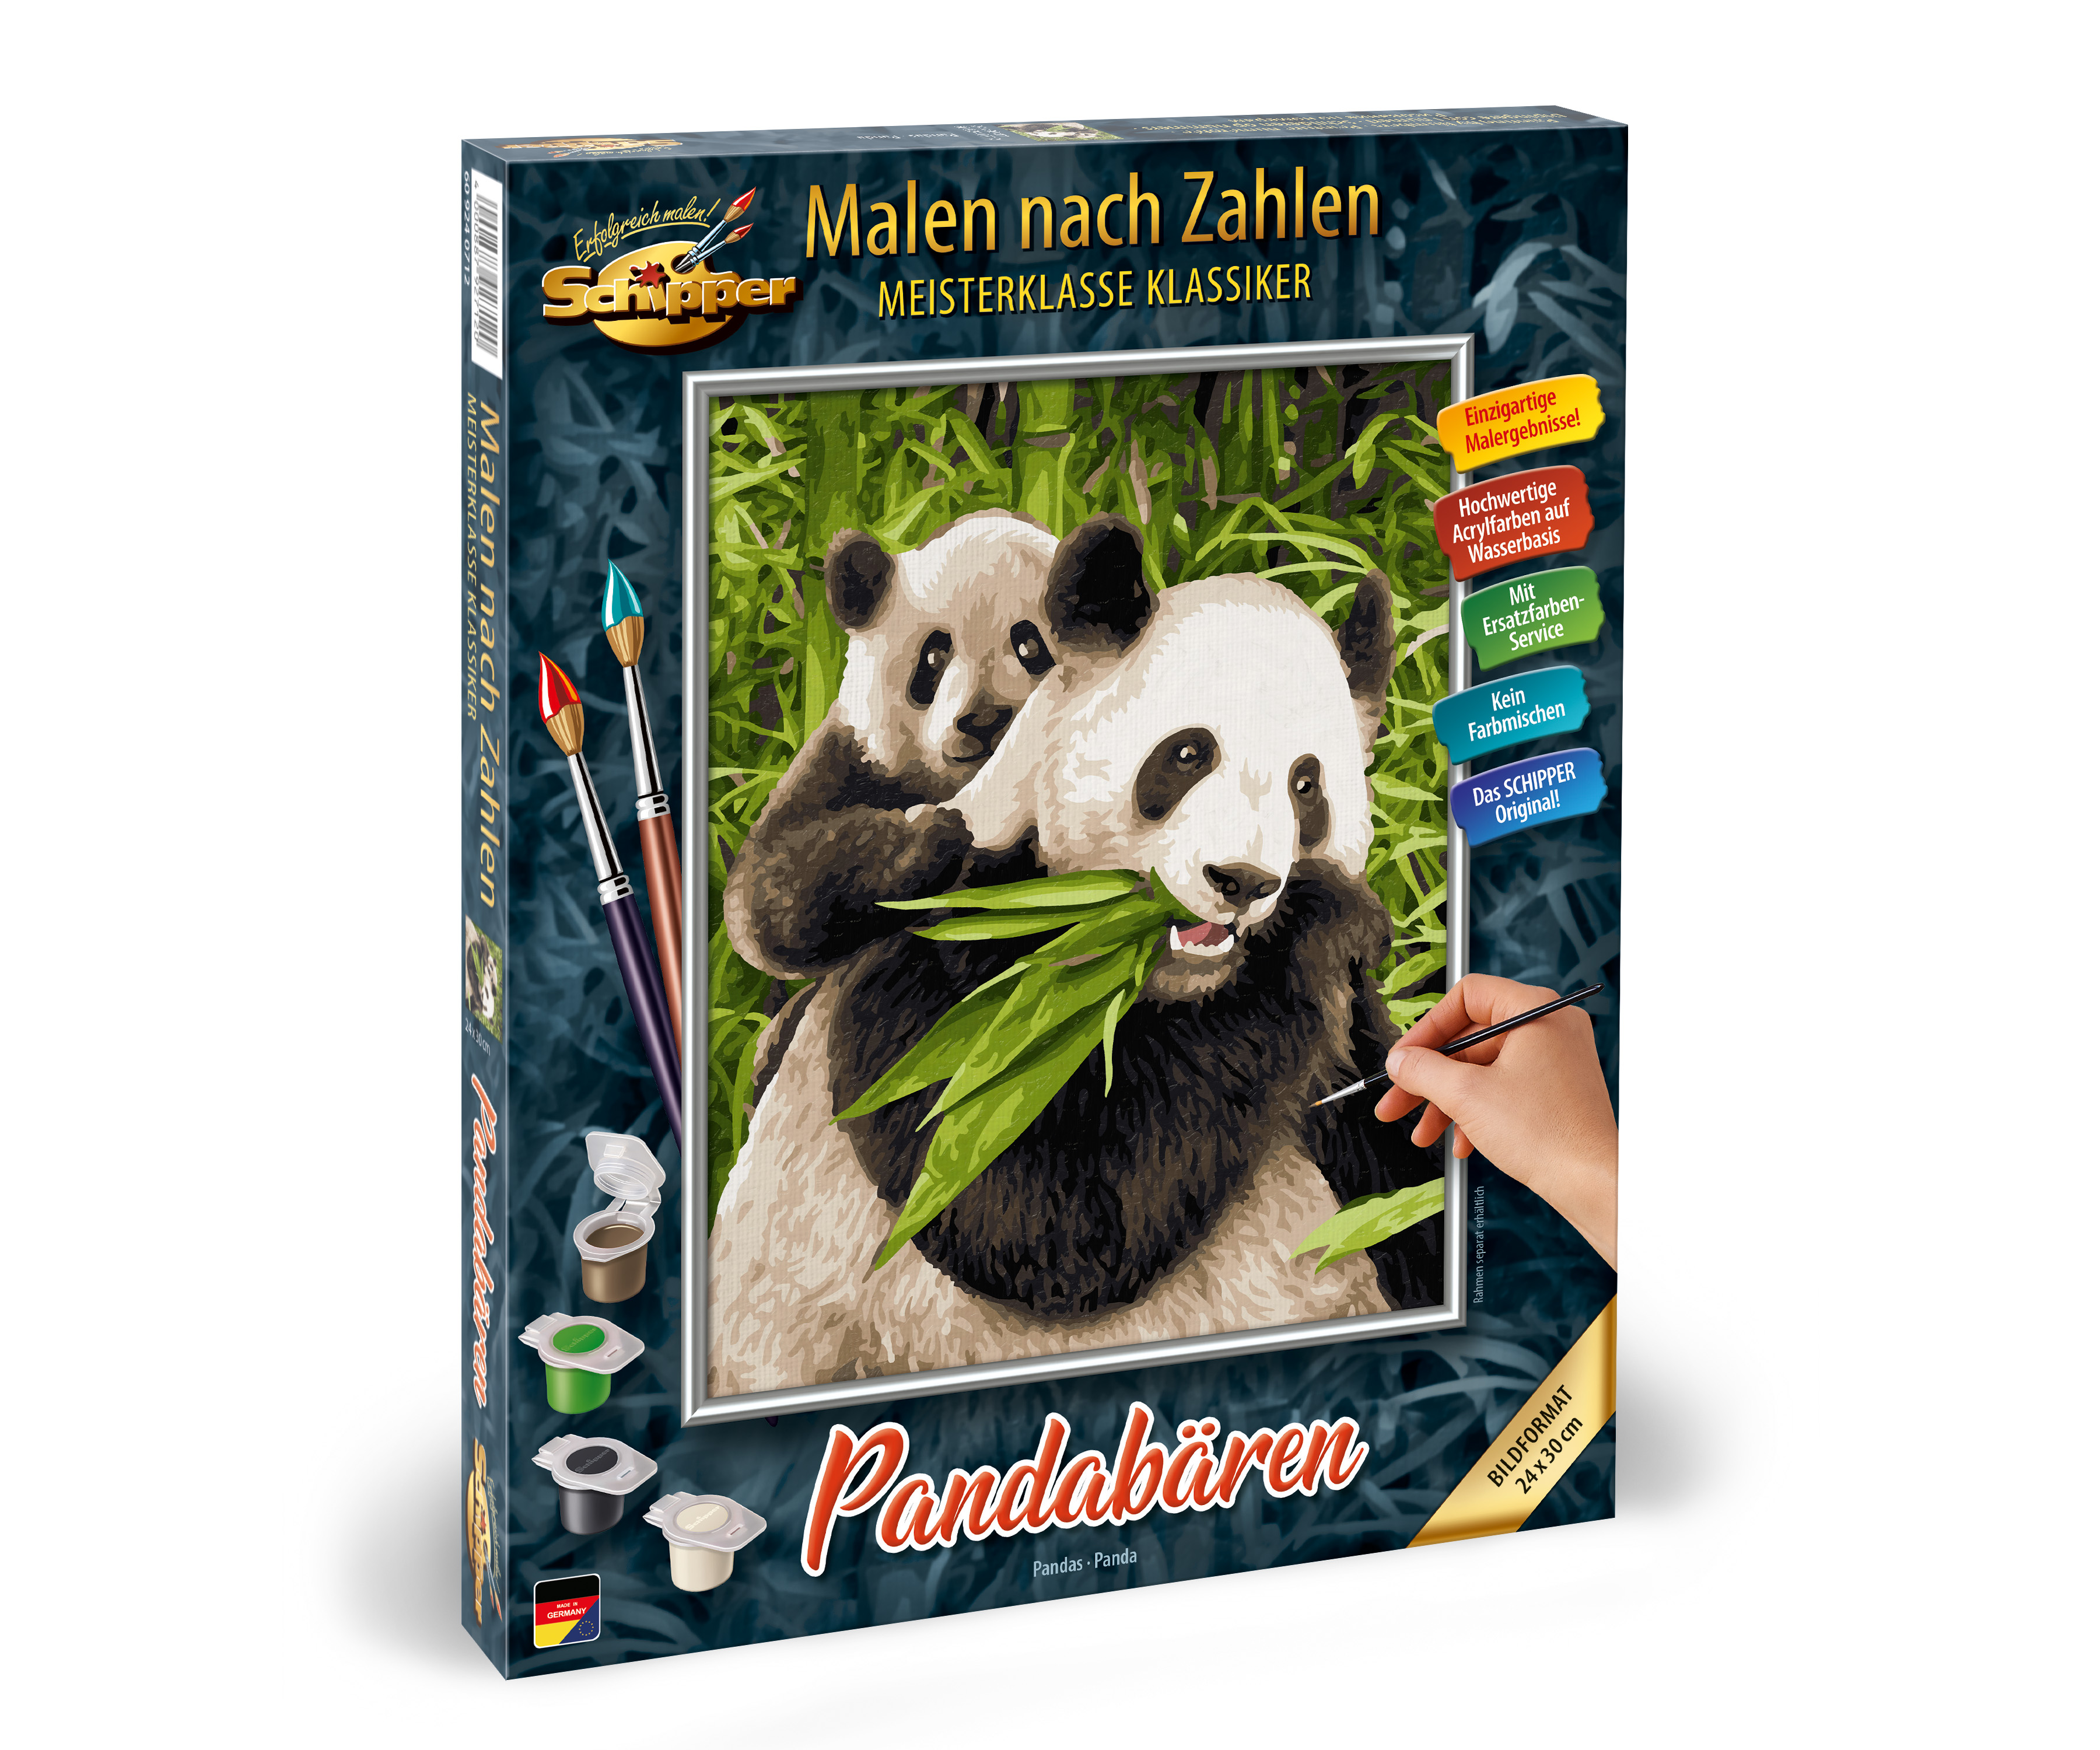 Pandabären Malen Nach Zahlen Schipper 609240712 Neu 